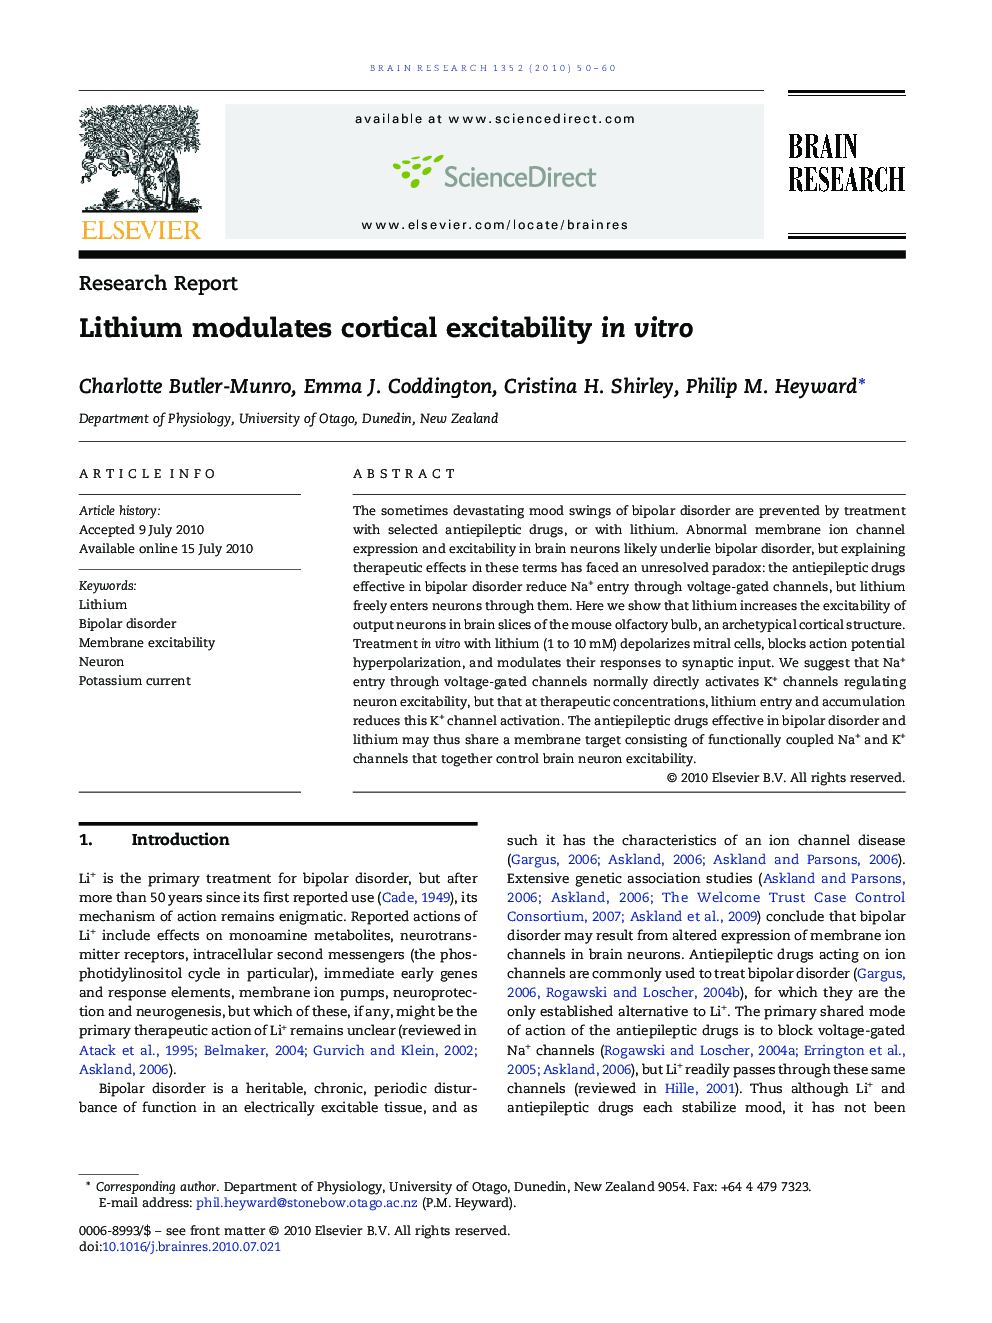 Lithium modulates cortical excitability in vitro